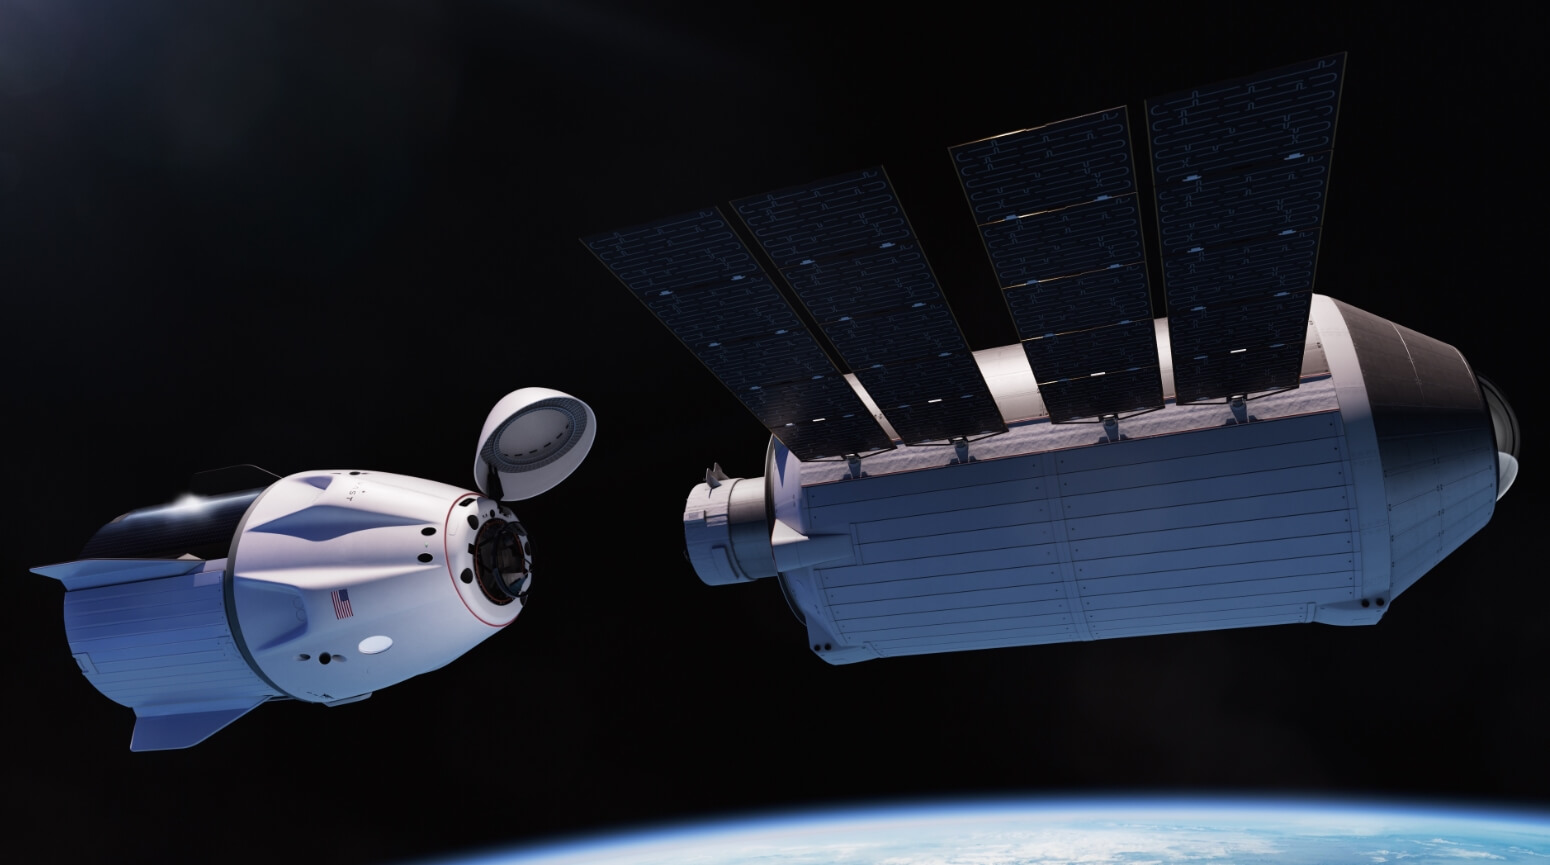 Коммерческая космическая станция Haven-1. Изображение демонстрирует стыковку космического корабля Dragon к станции Haven-1. Фото.